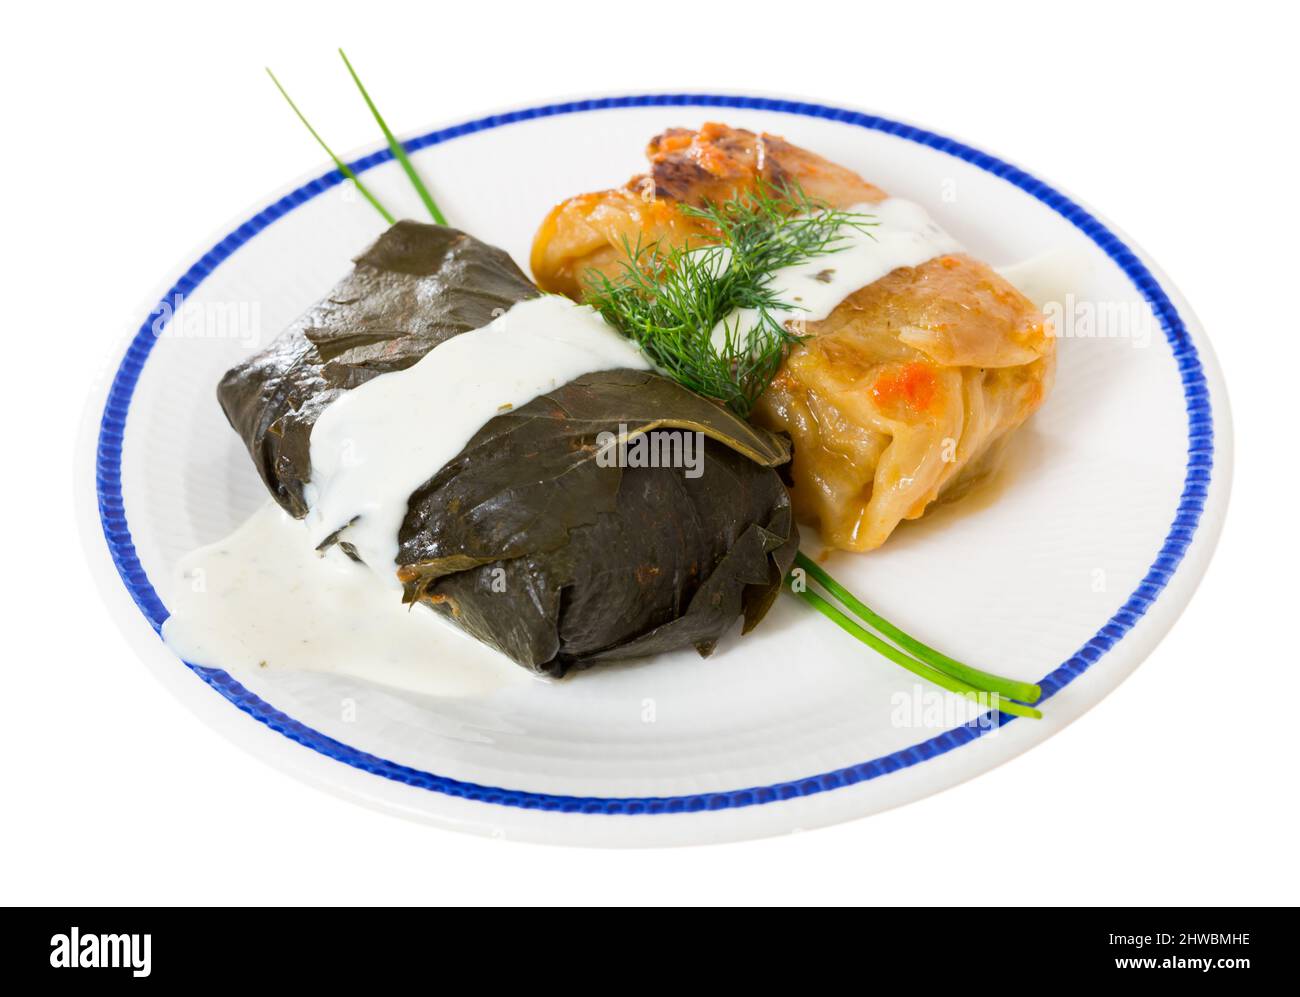 Piatto tradizionale orientale della cucina europea - cavolo ripieno e dolma con panna acida fresca e erbe aromatiche. Isolato su sfondo bianco Foto Stock